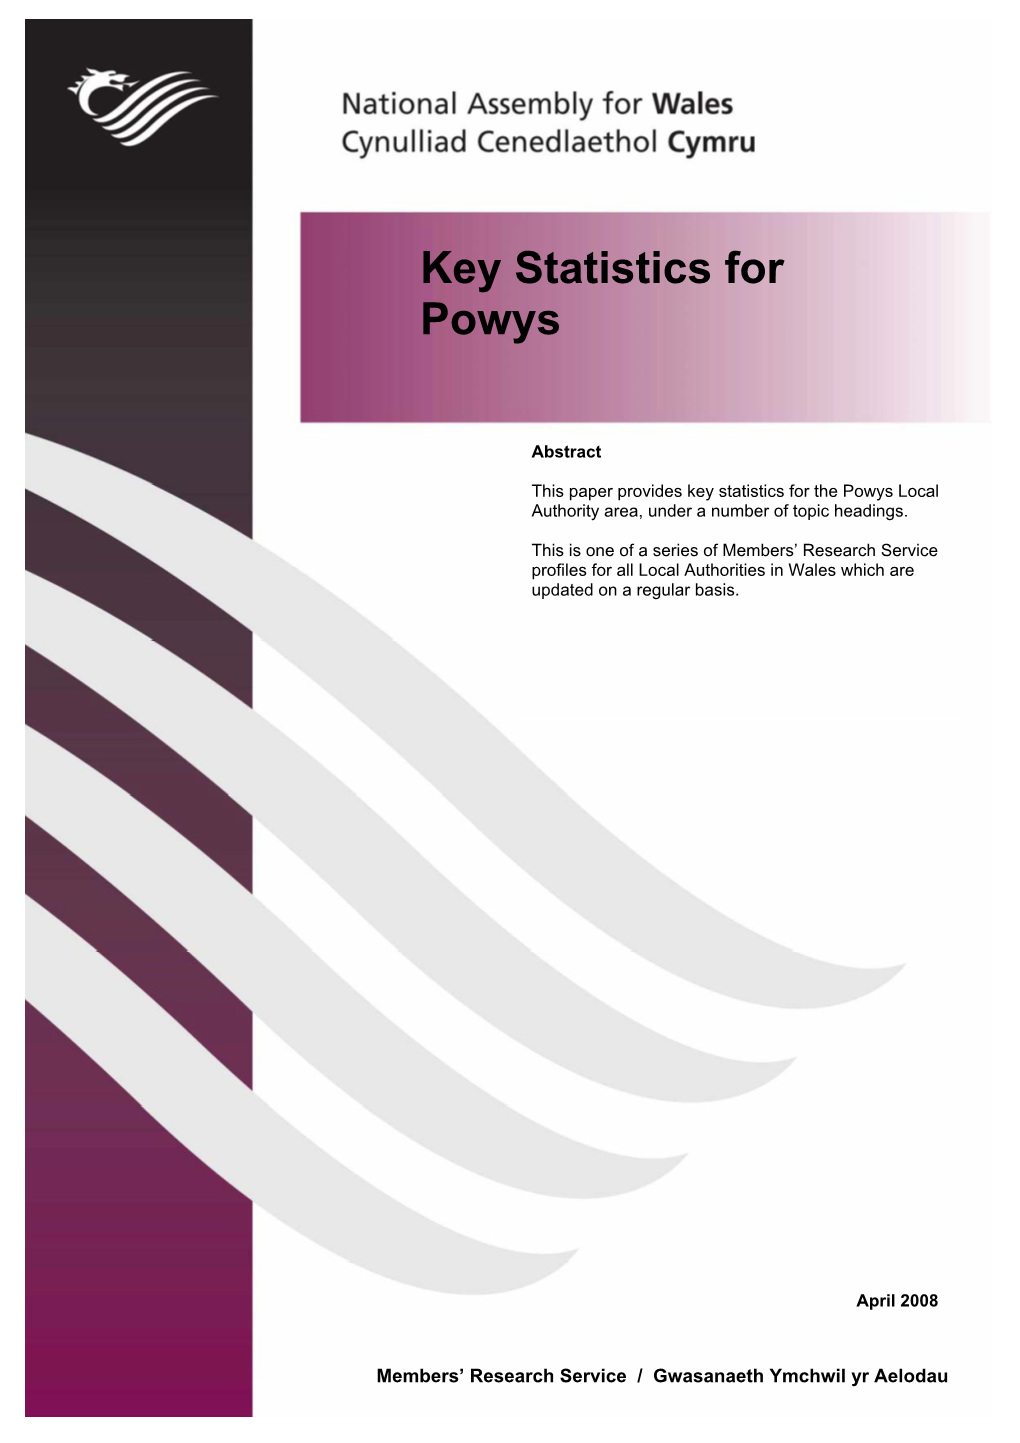 Key Statistics for Powys